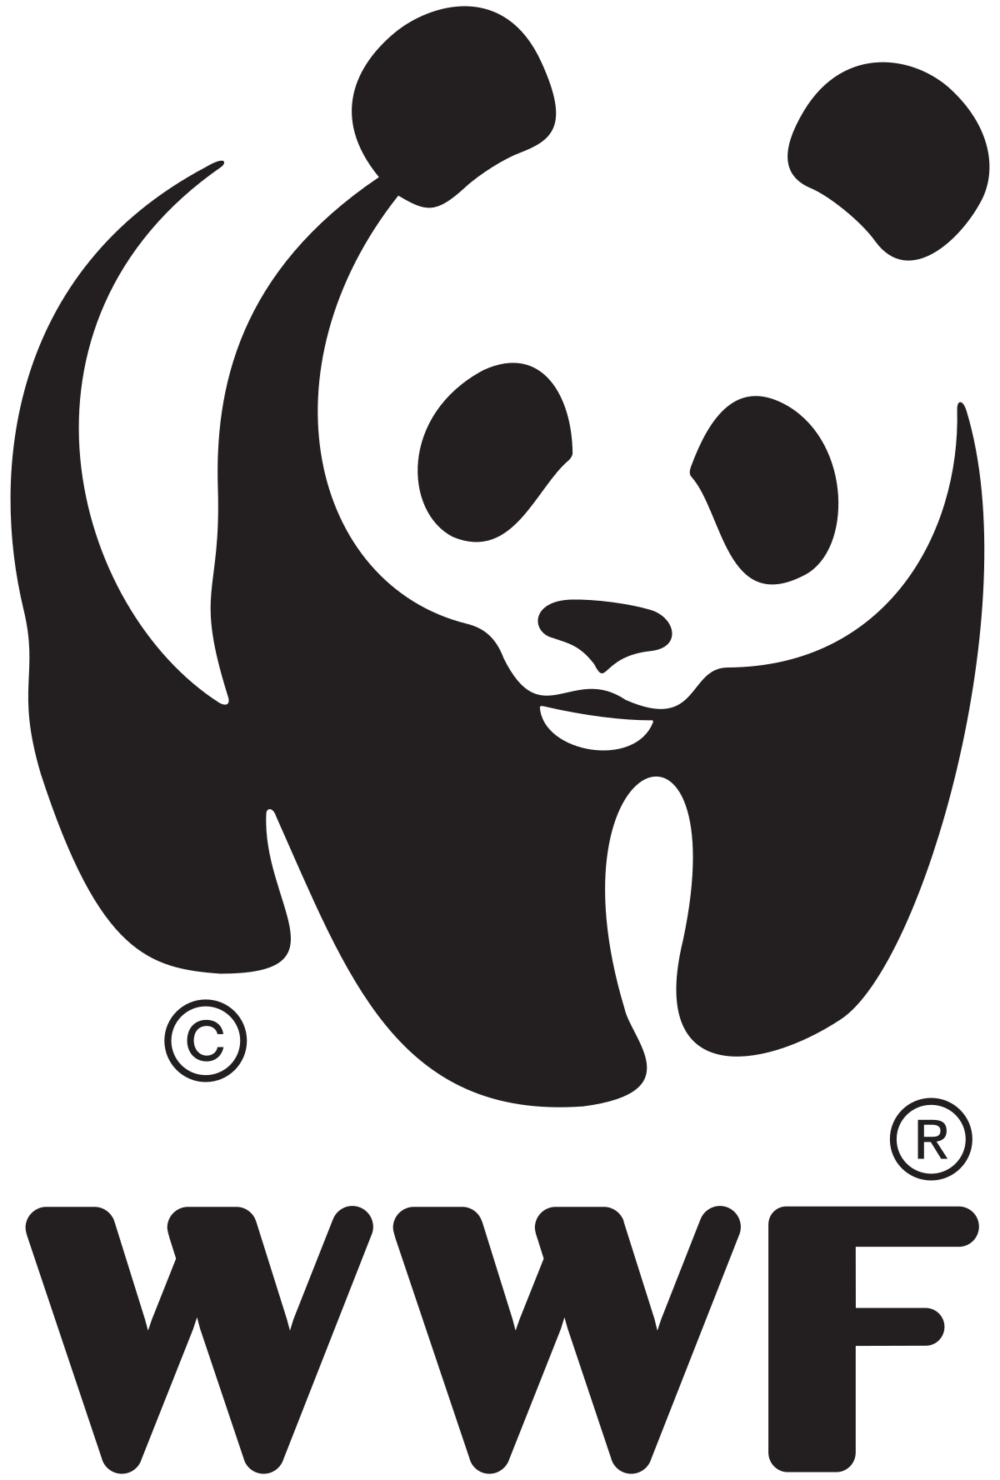 WWF Deutschland (World Wide Fund For Nature)